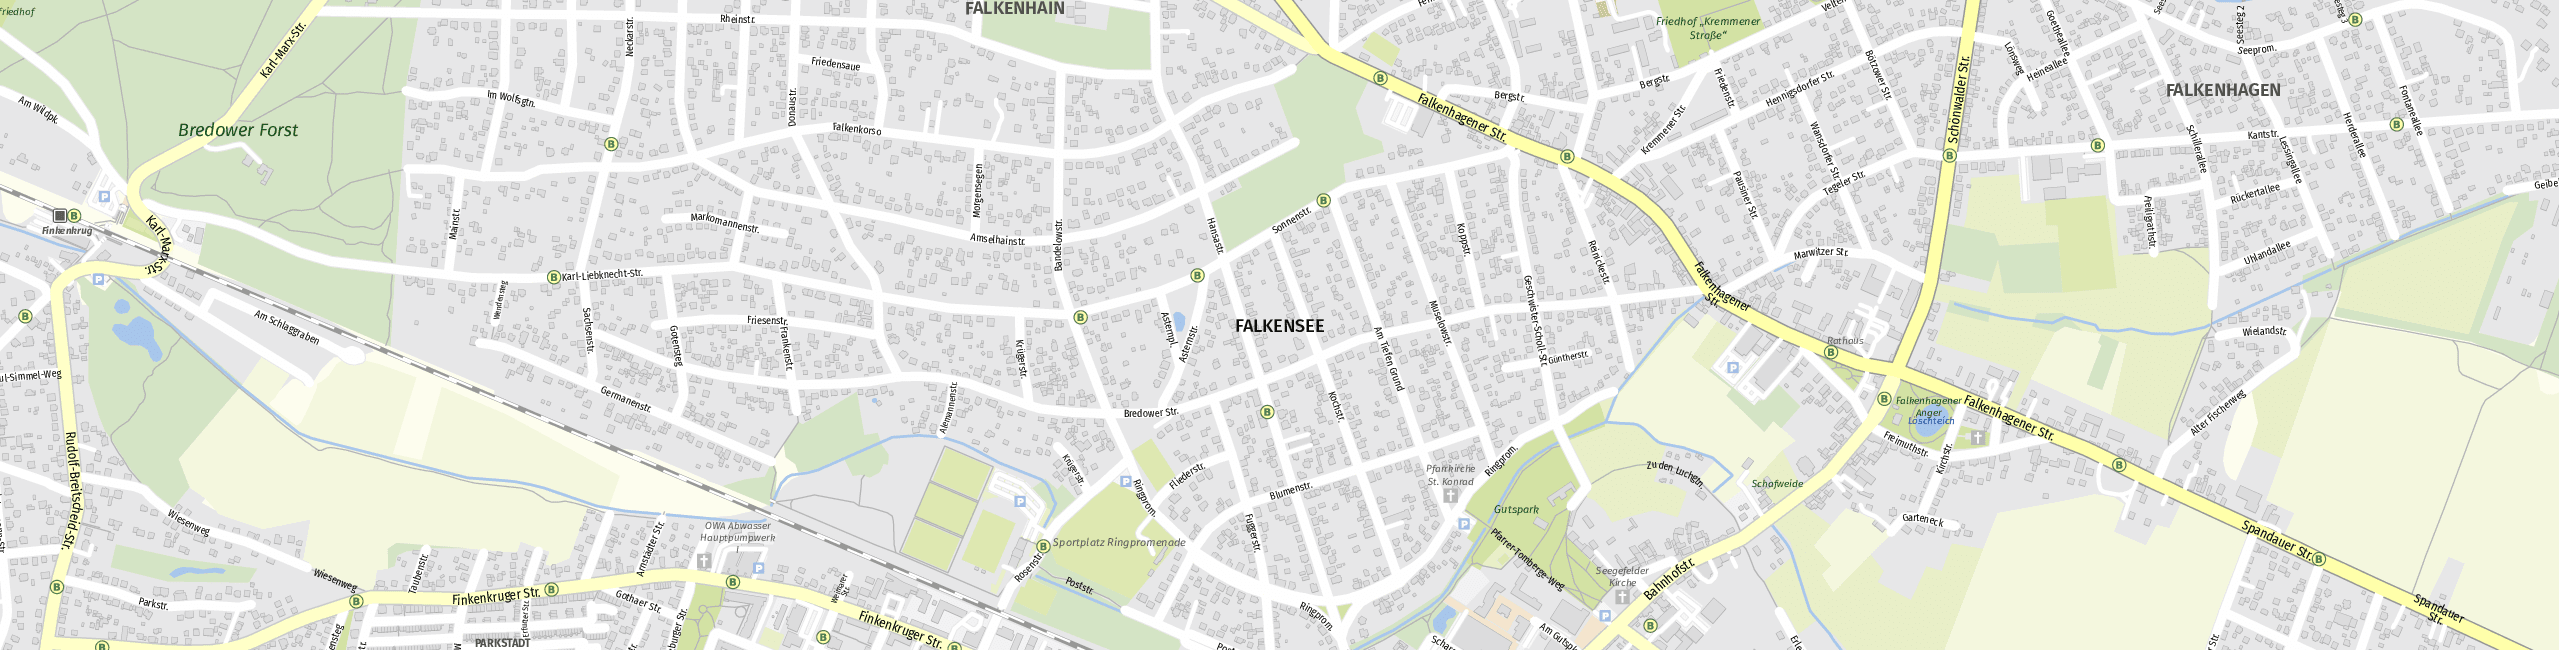 Stadtplan Falkensee zum Downloaden.